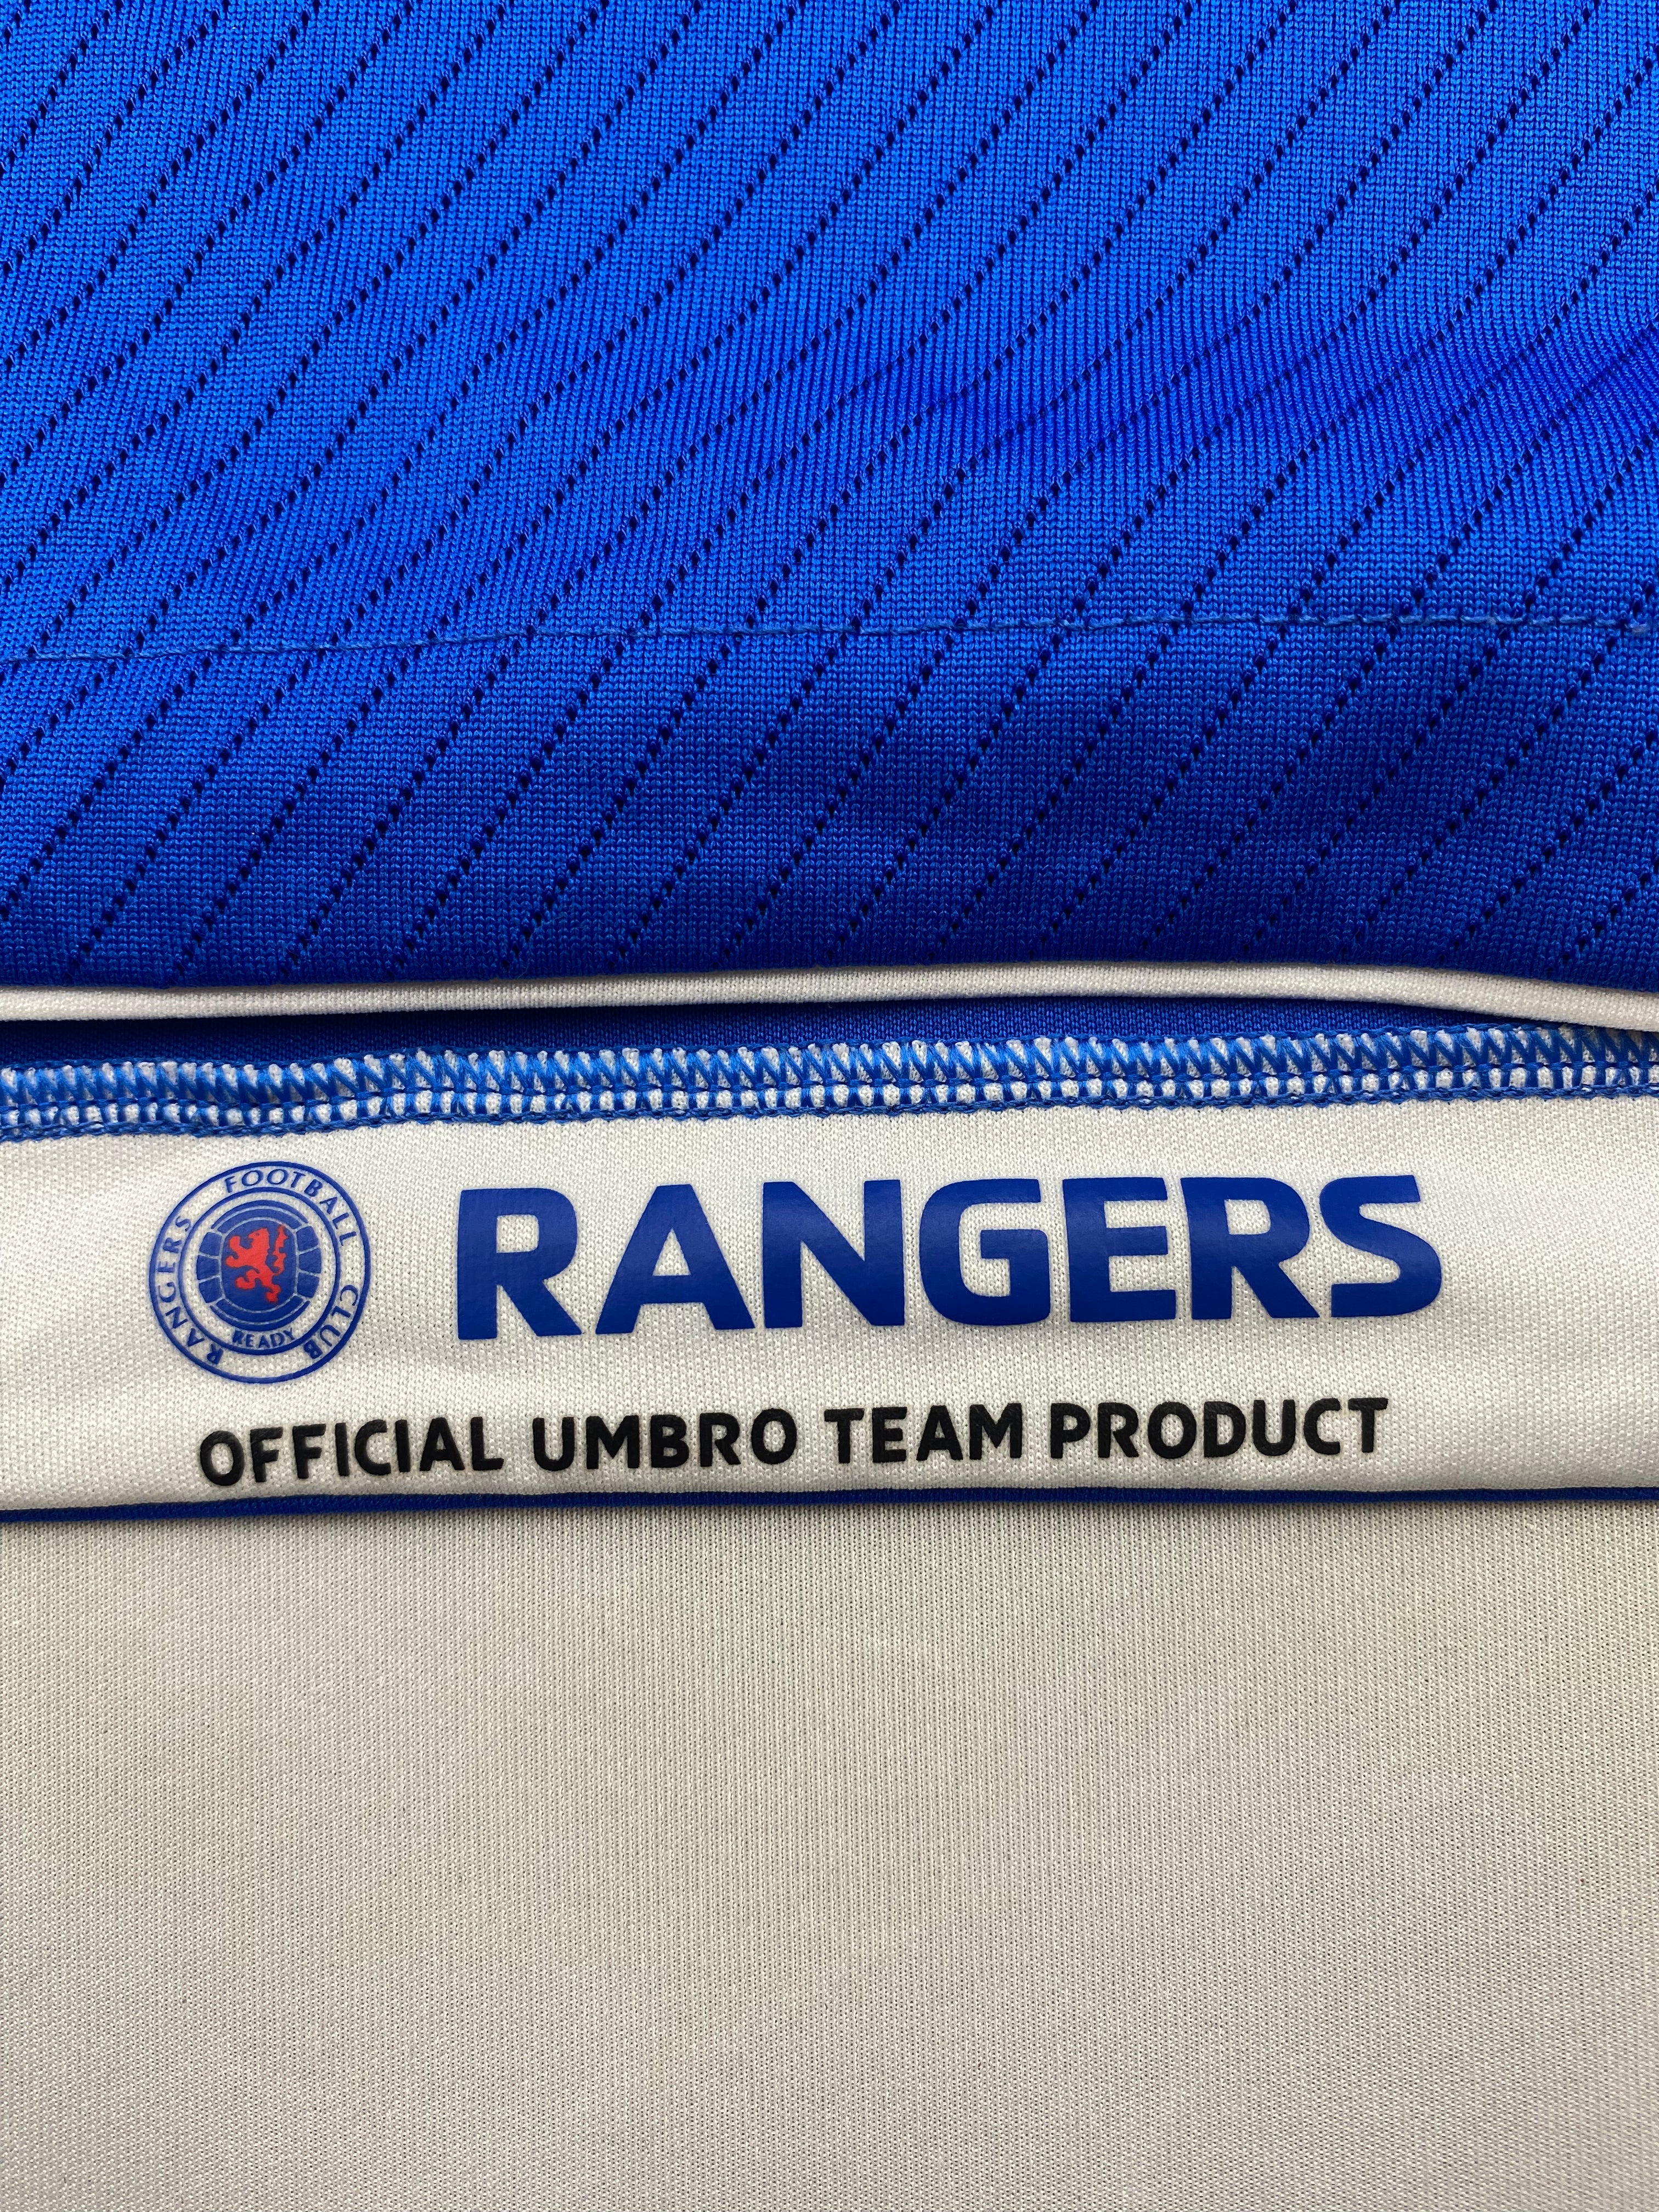 2008/09 Rangers Home Shirt (XL) 9/10